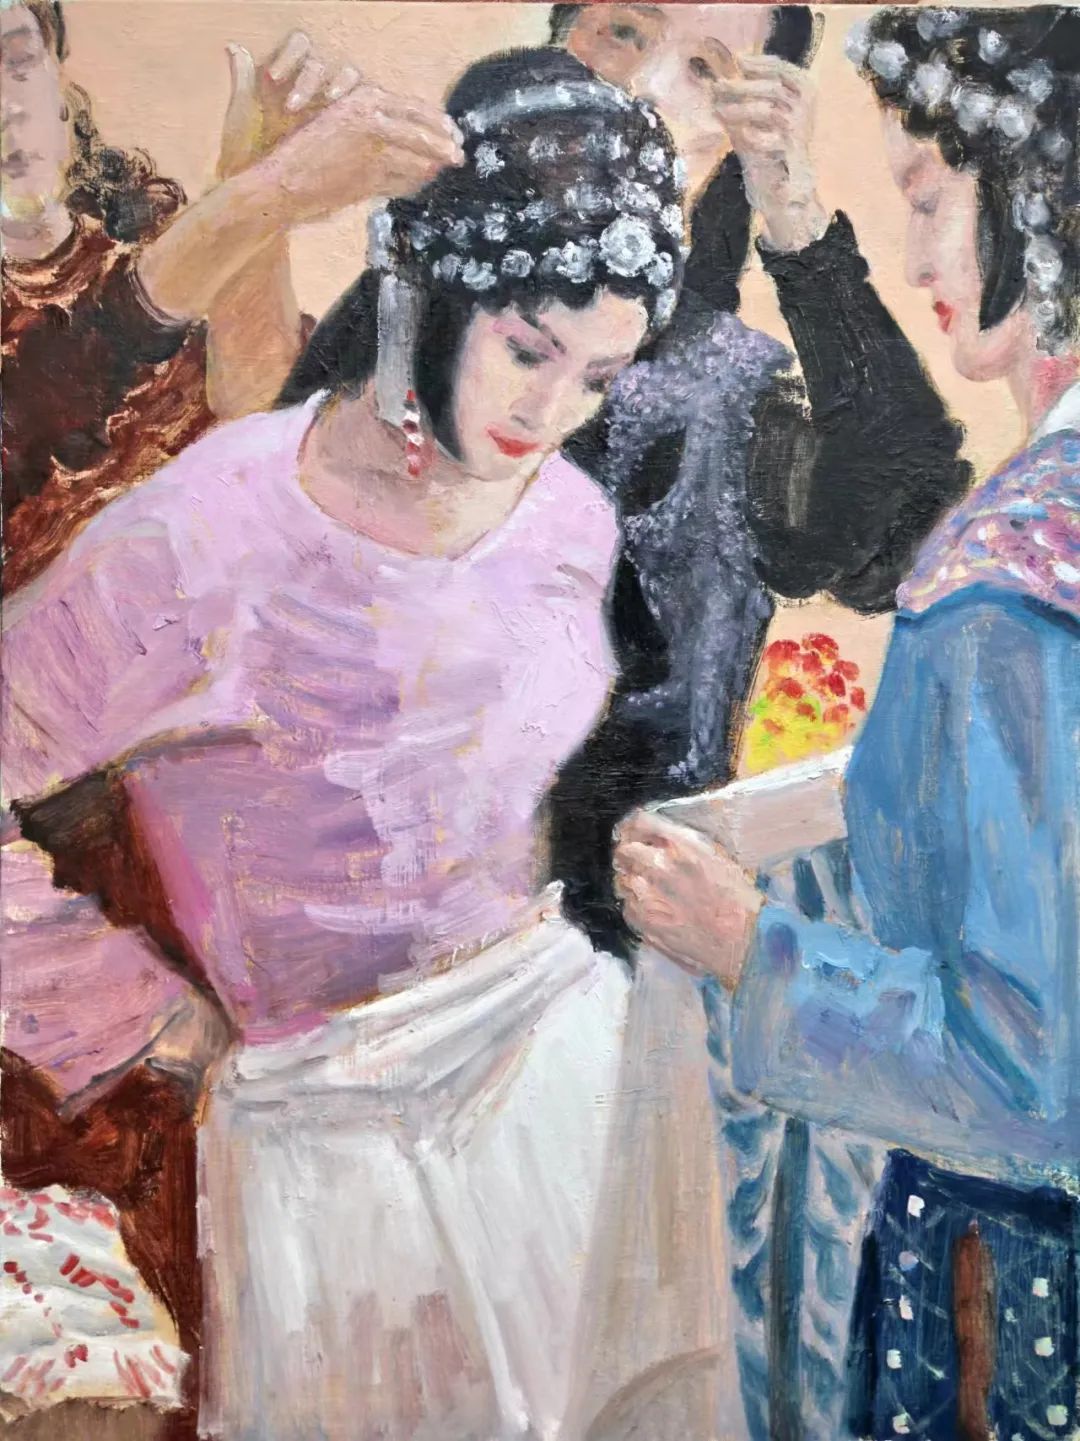 静候永恒——岳海涛《出场》系列油画作品中生命的节律与诗意